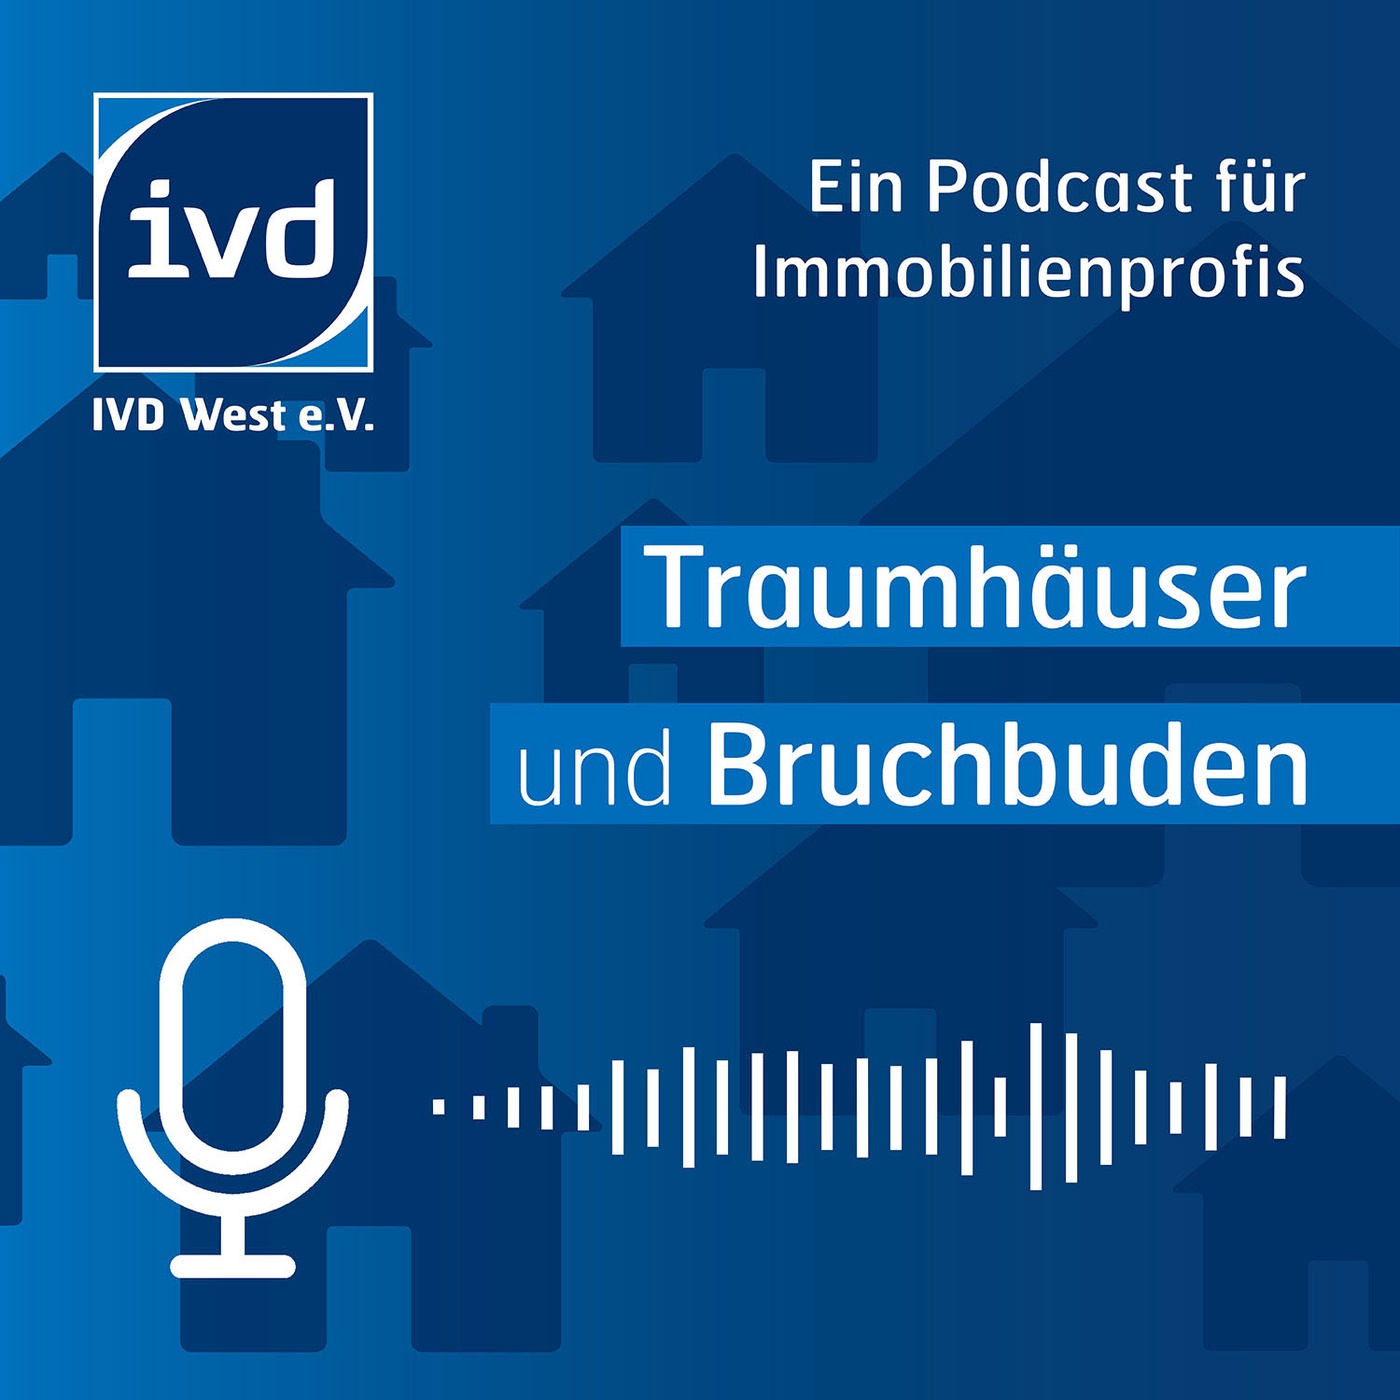 Traumhäuser und Bruchbuden - Ein Podcast für Immobilienprofis